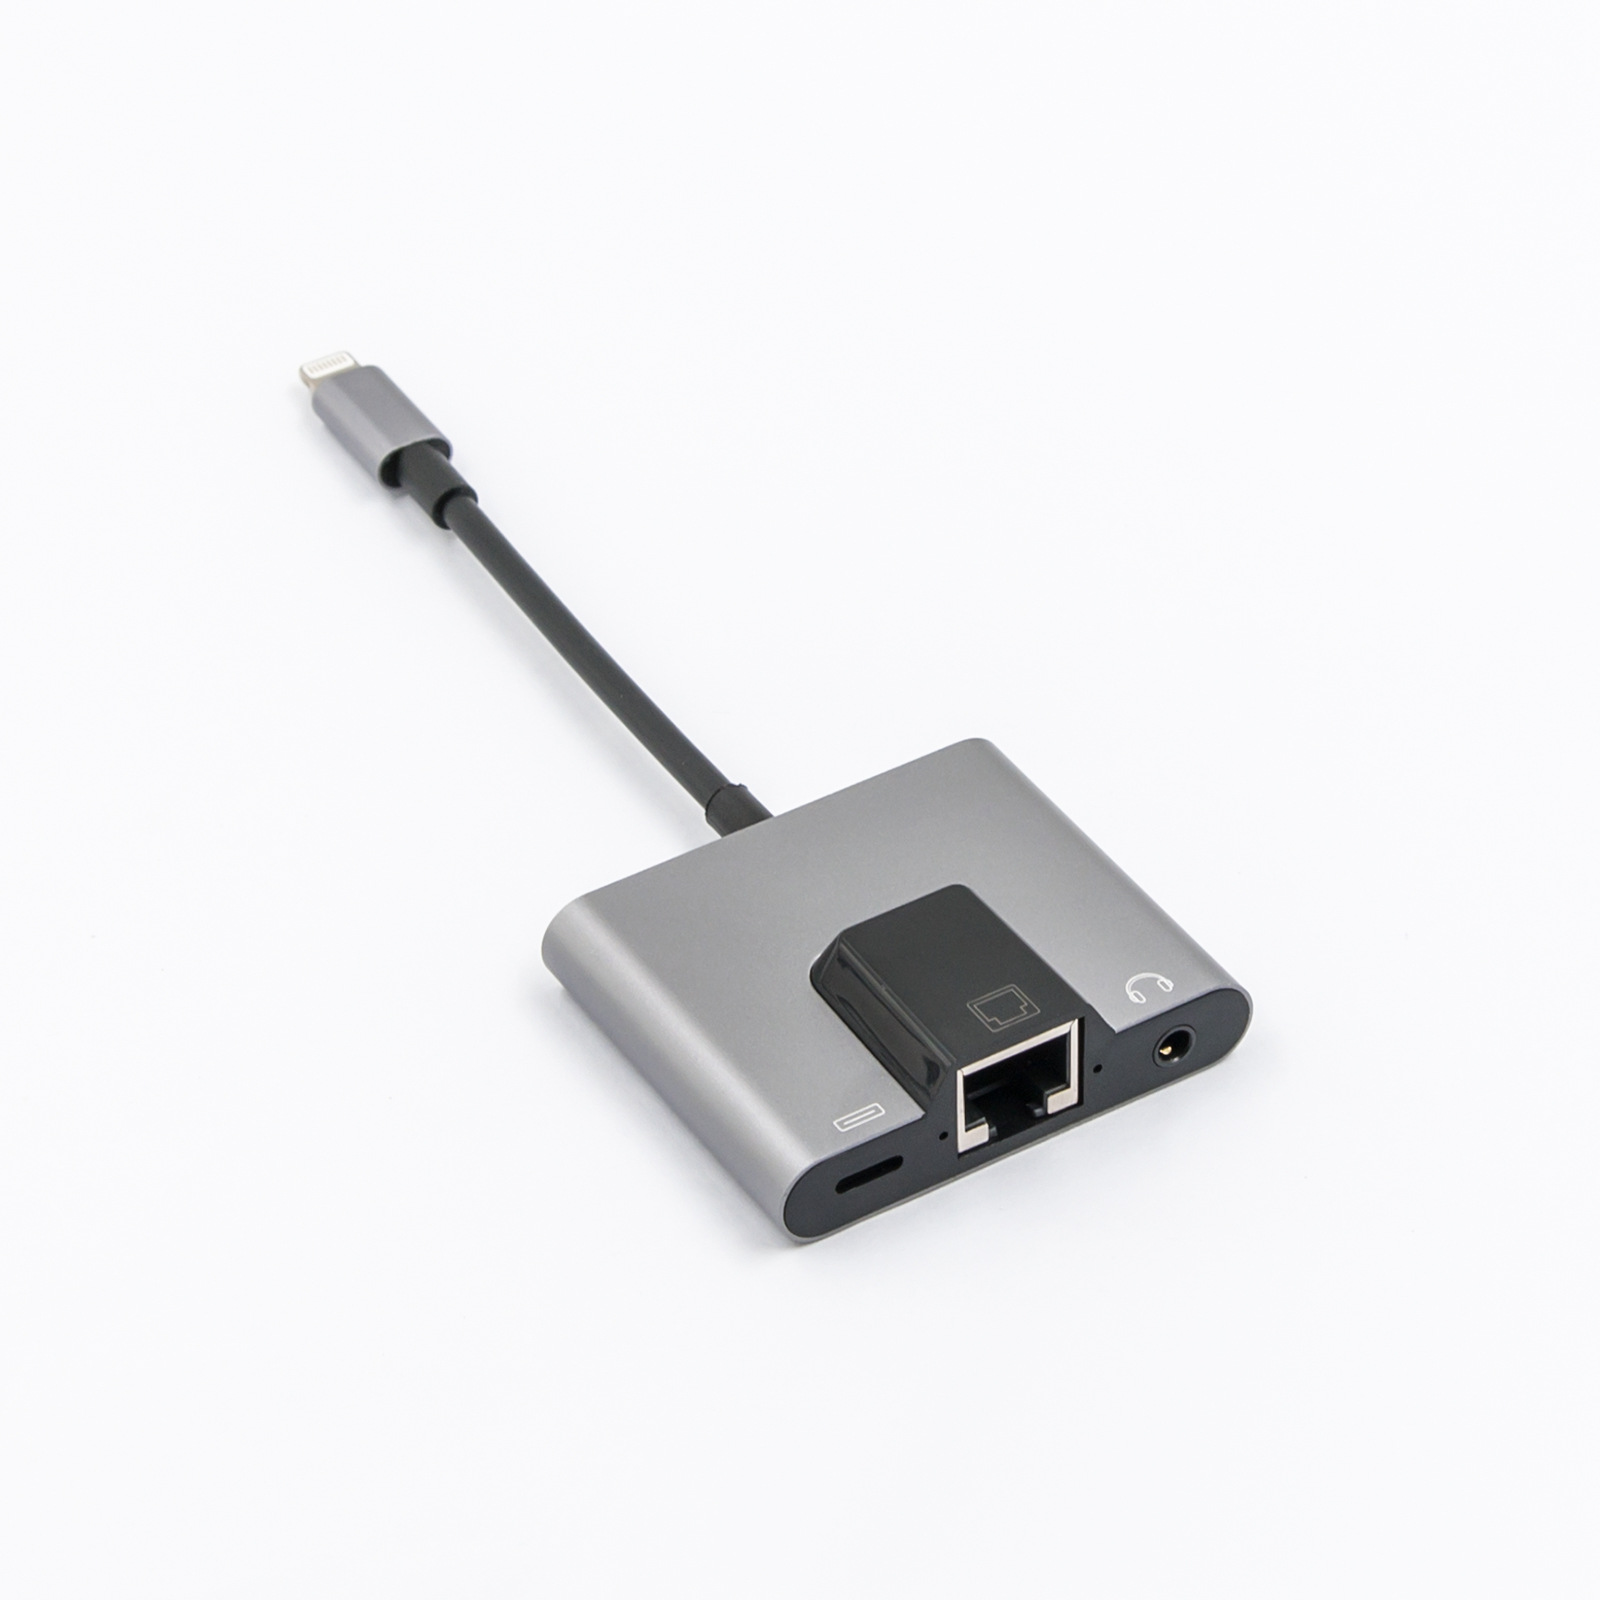 Bộ chuyển đổi 3 trong 1 USB-C/Type-C sang USB-C/Type-C và cổng Ethernet adapter và jack tai nghe 3,5 mm dành cho dành cho Laptop, Macbook, Điện thoại, Samsung Dex 1